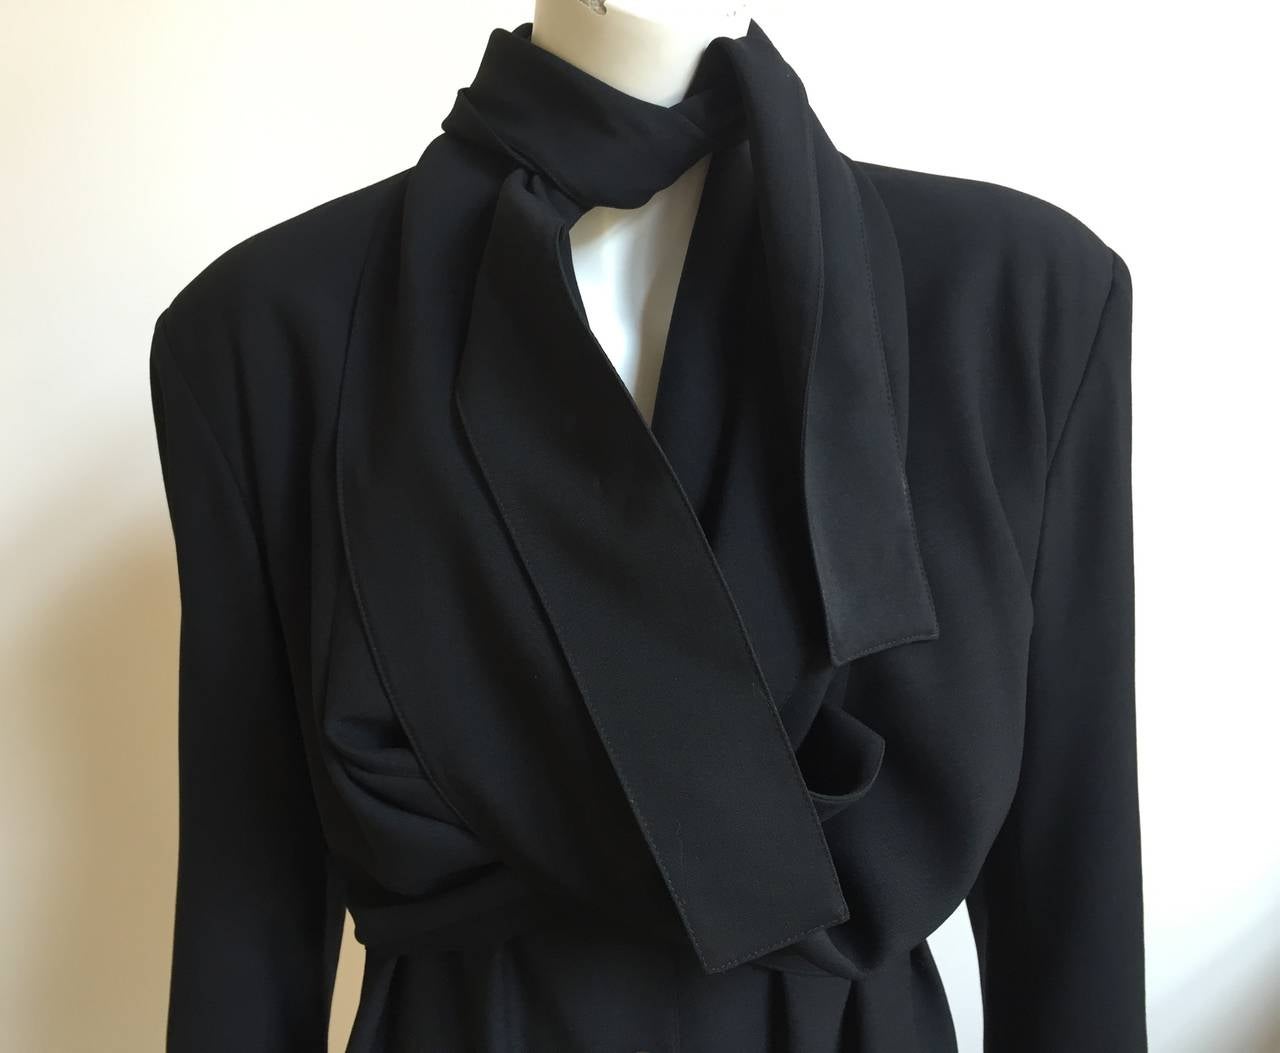 Women's Jean Paul Gaultier 80s black wool coat size medium.